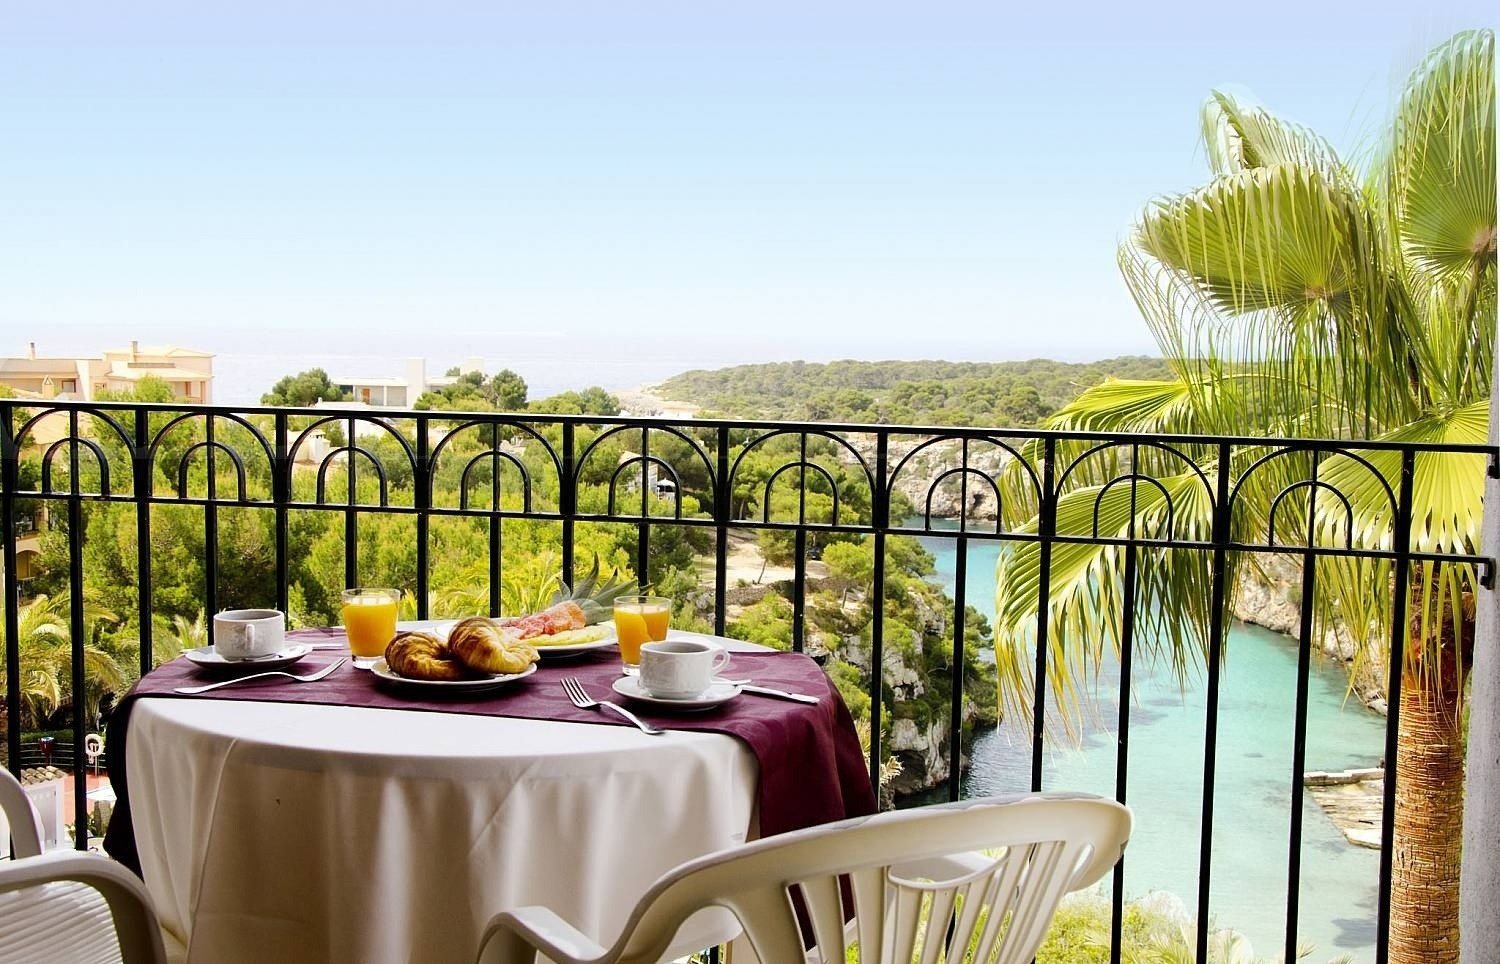 Blick auf den Pool von der Terrasse des Hotels Ona Cala Pi auf Mallorca